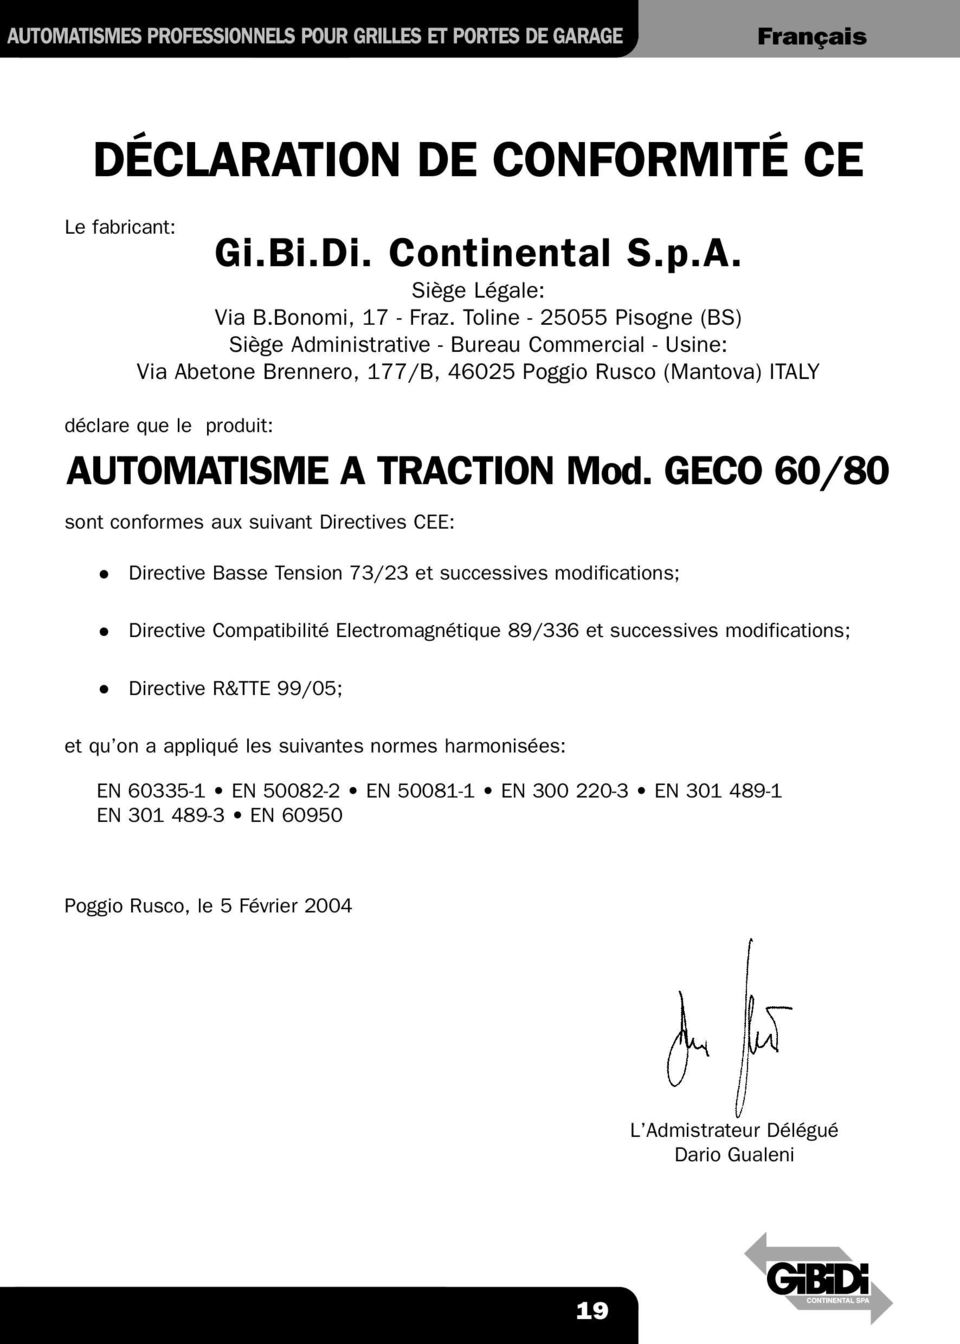 GECO 60/80 sont conformes aux suivant Directives CEE: Directive Basse Tension 73/23 et successives modifications; Directive Compatibilité Electromagnétique 89/336 et successives modifications;